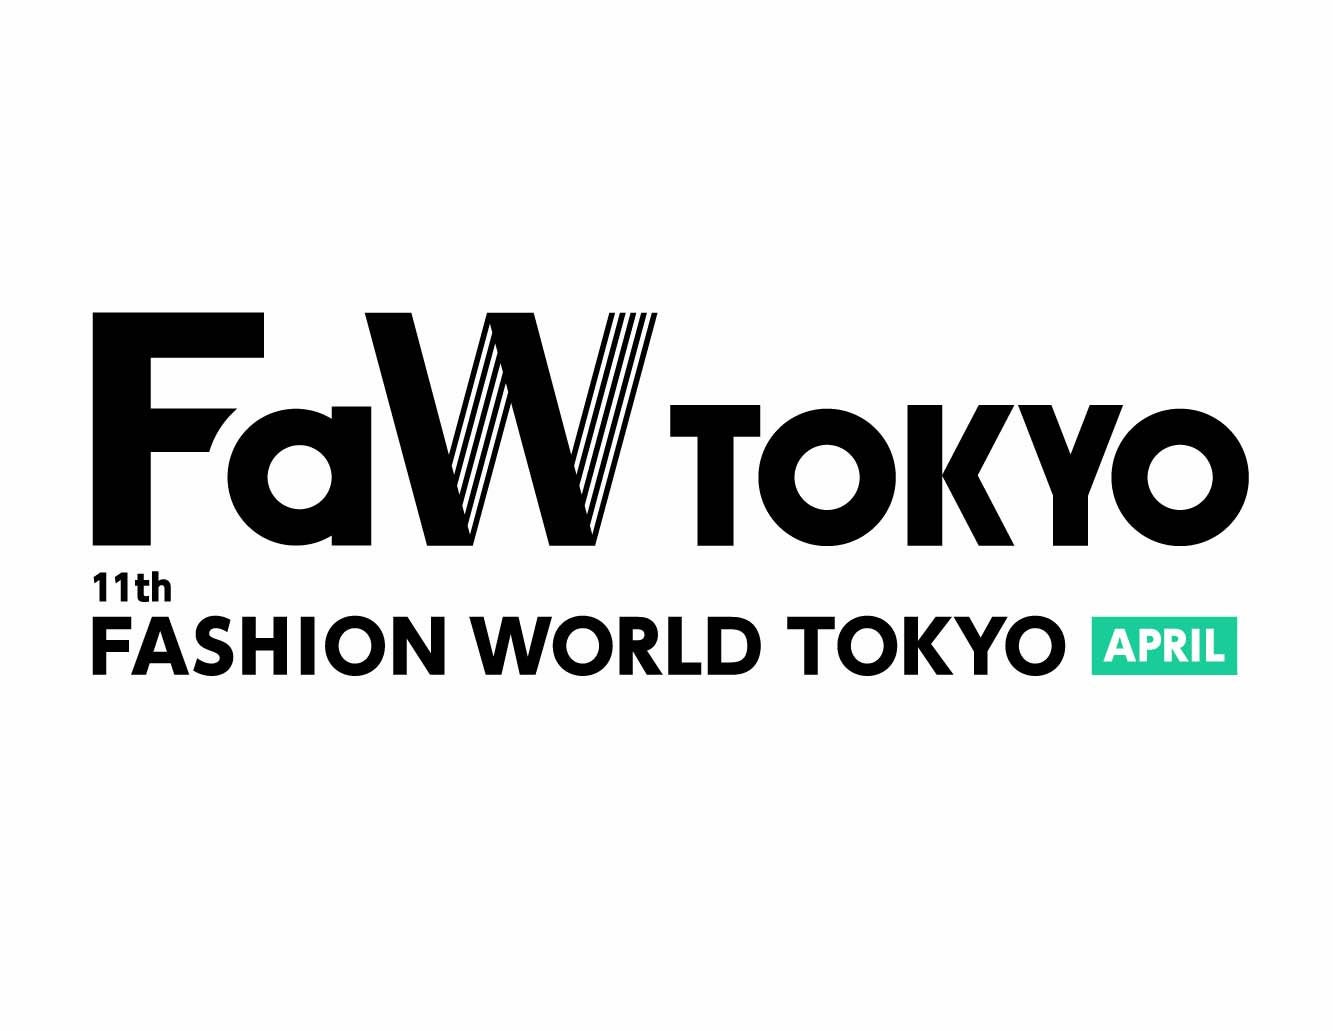 ランニングDXサービスに向けたウェアラブル製品を日本最大級のファッション展【FaW TOKYO】の「健康・美容・...